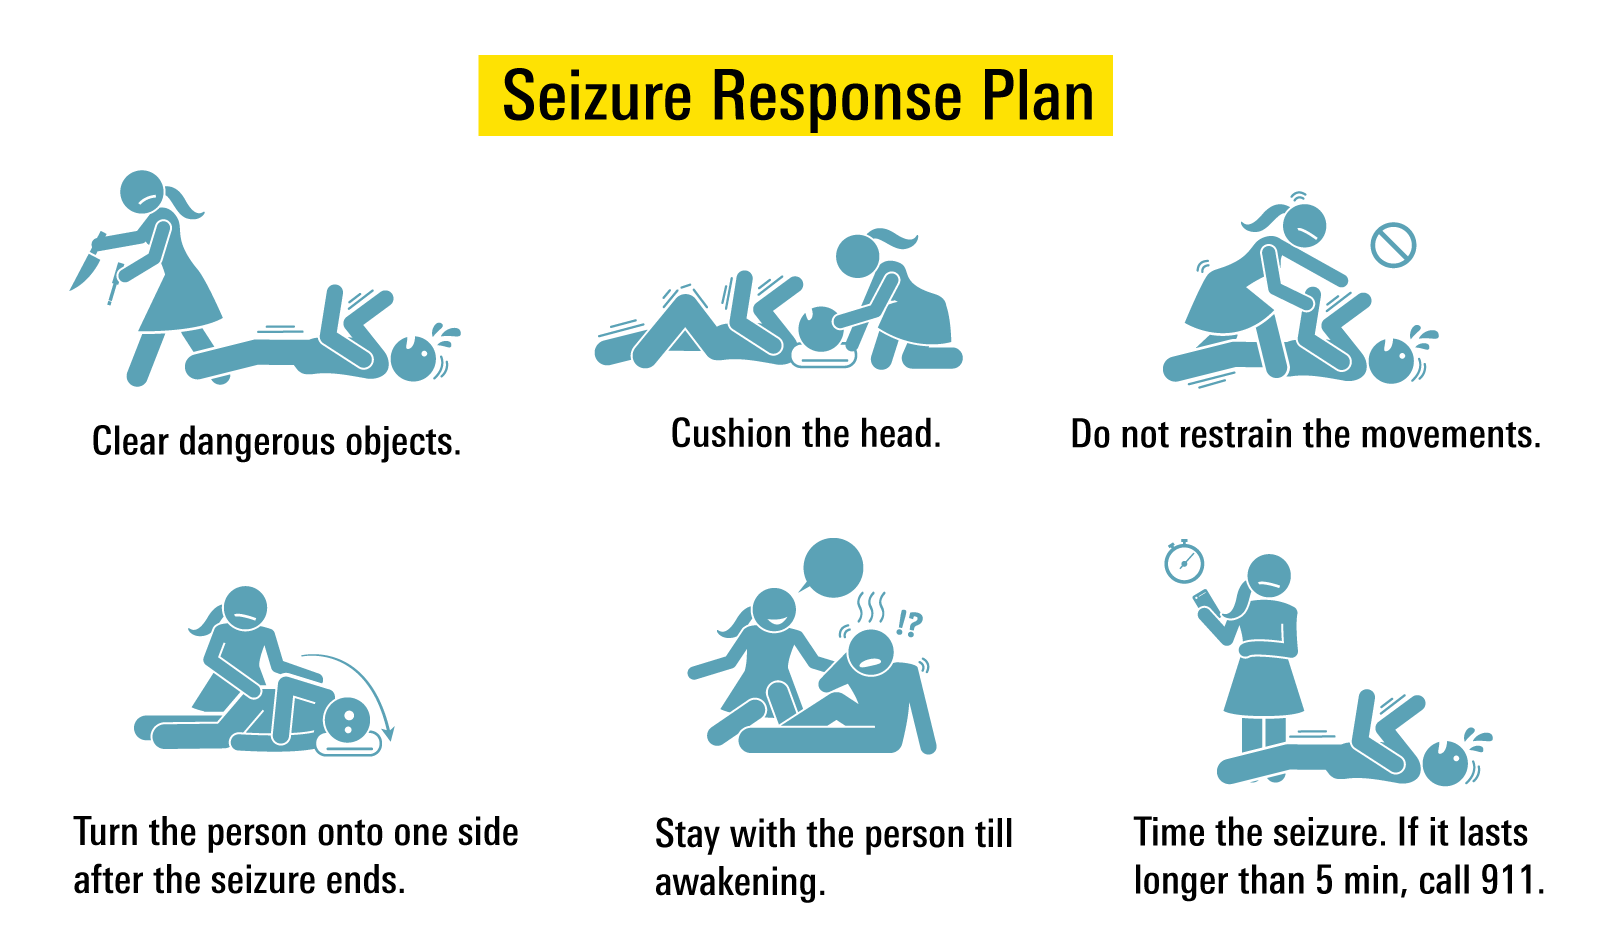 Seizure Response Plan